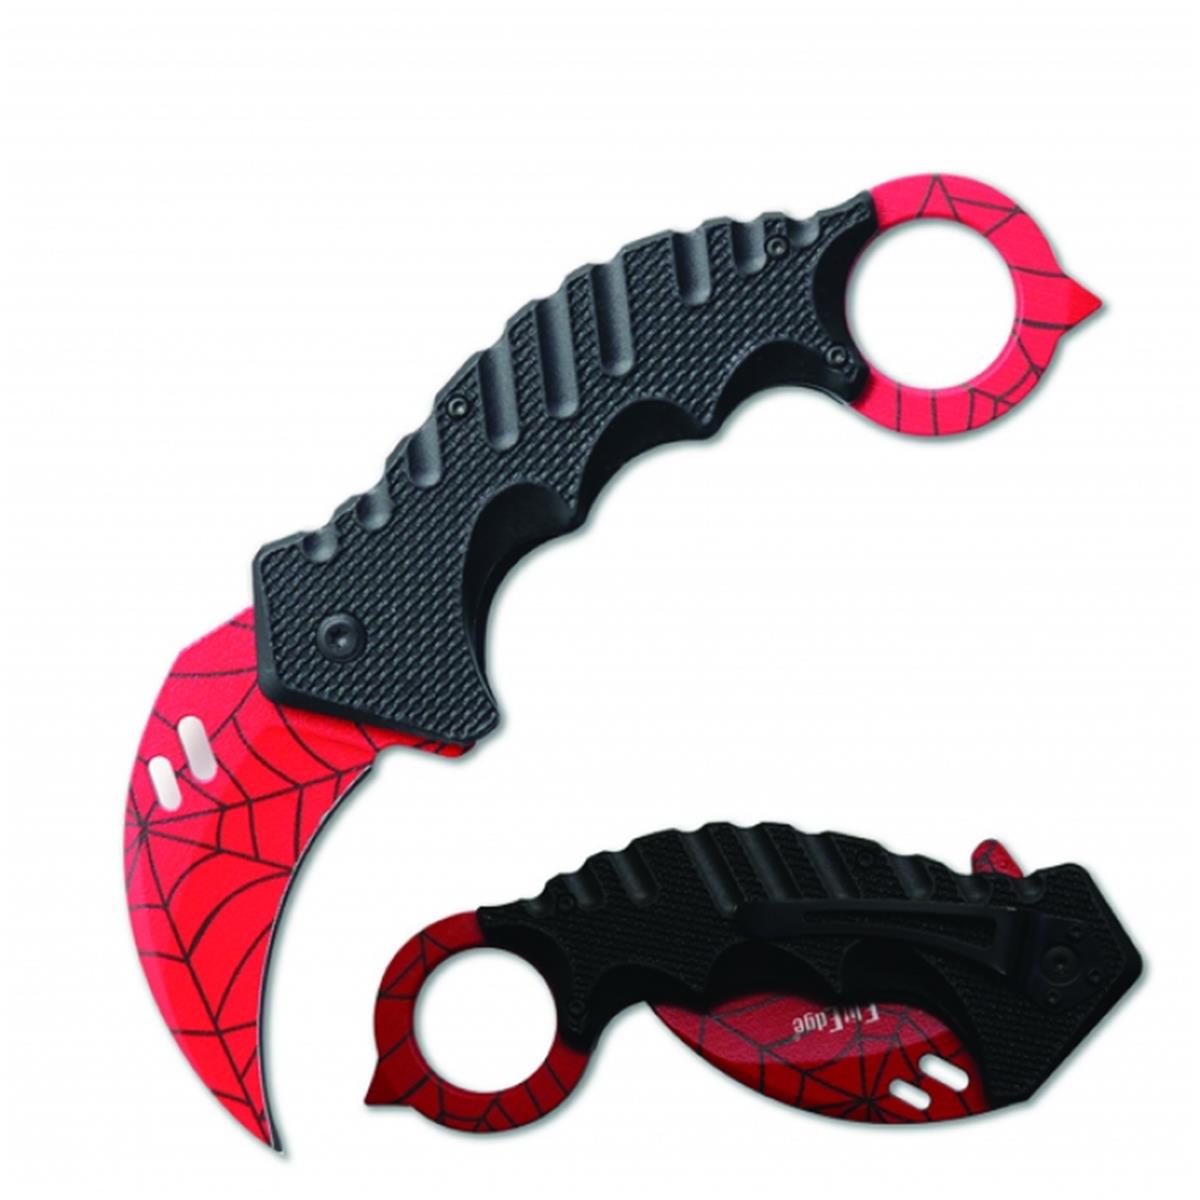 Products EK08RSWB Elitedge Karambit Red Spider Web Folding Knife